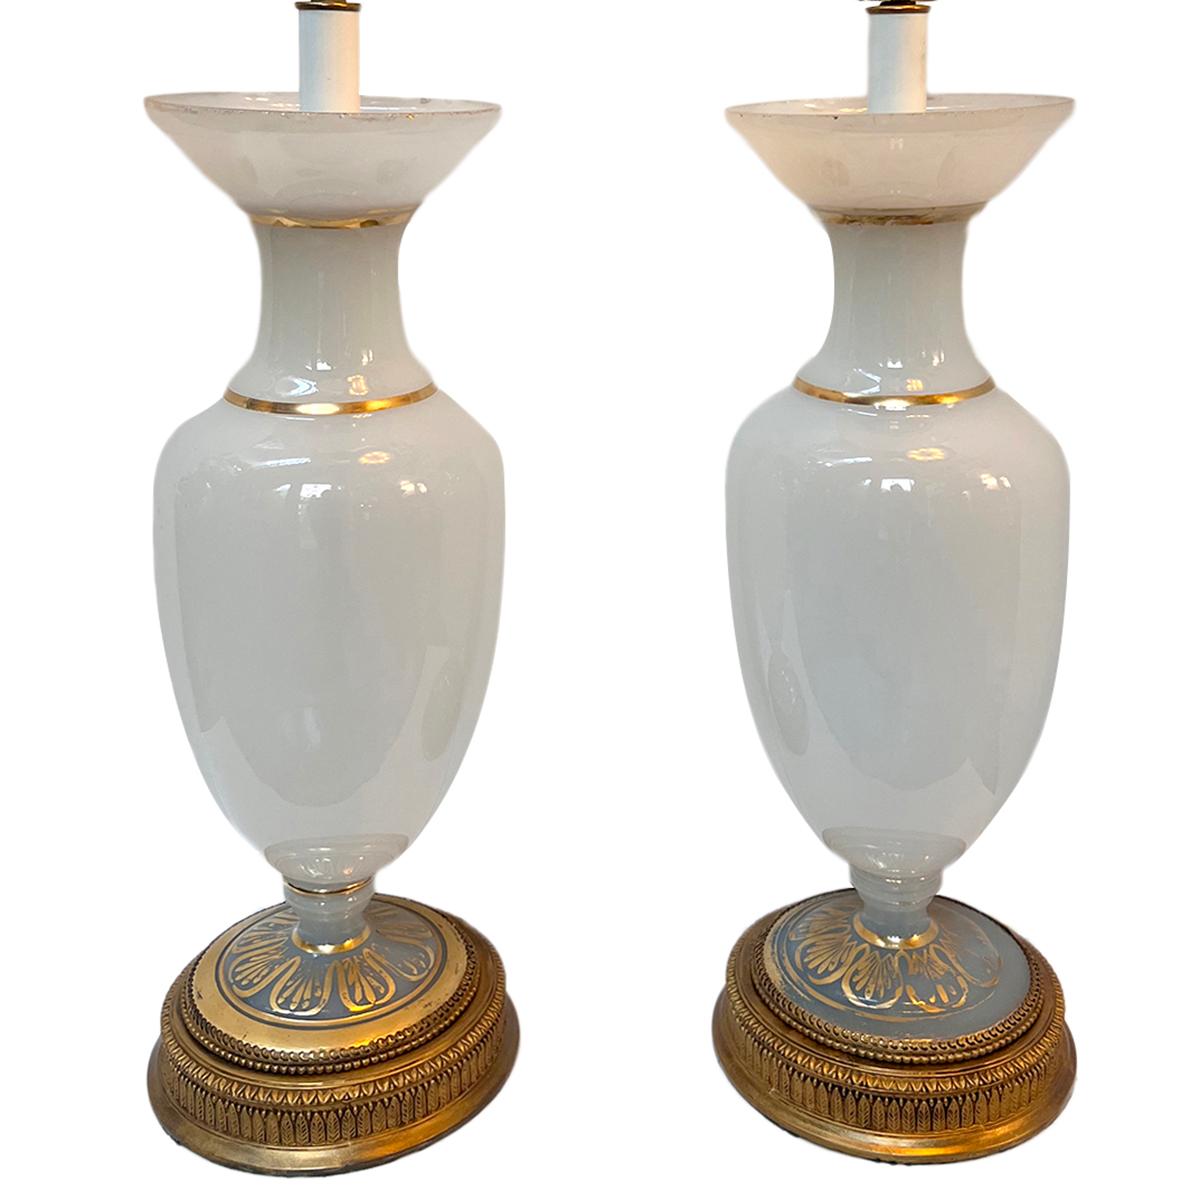 Paire de lampes françaises en verre opalin des années 1930 avec détails dorés.

Mesures :
Hauteur du corps : 23.75